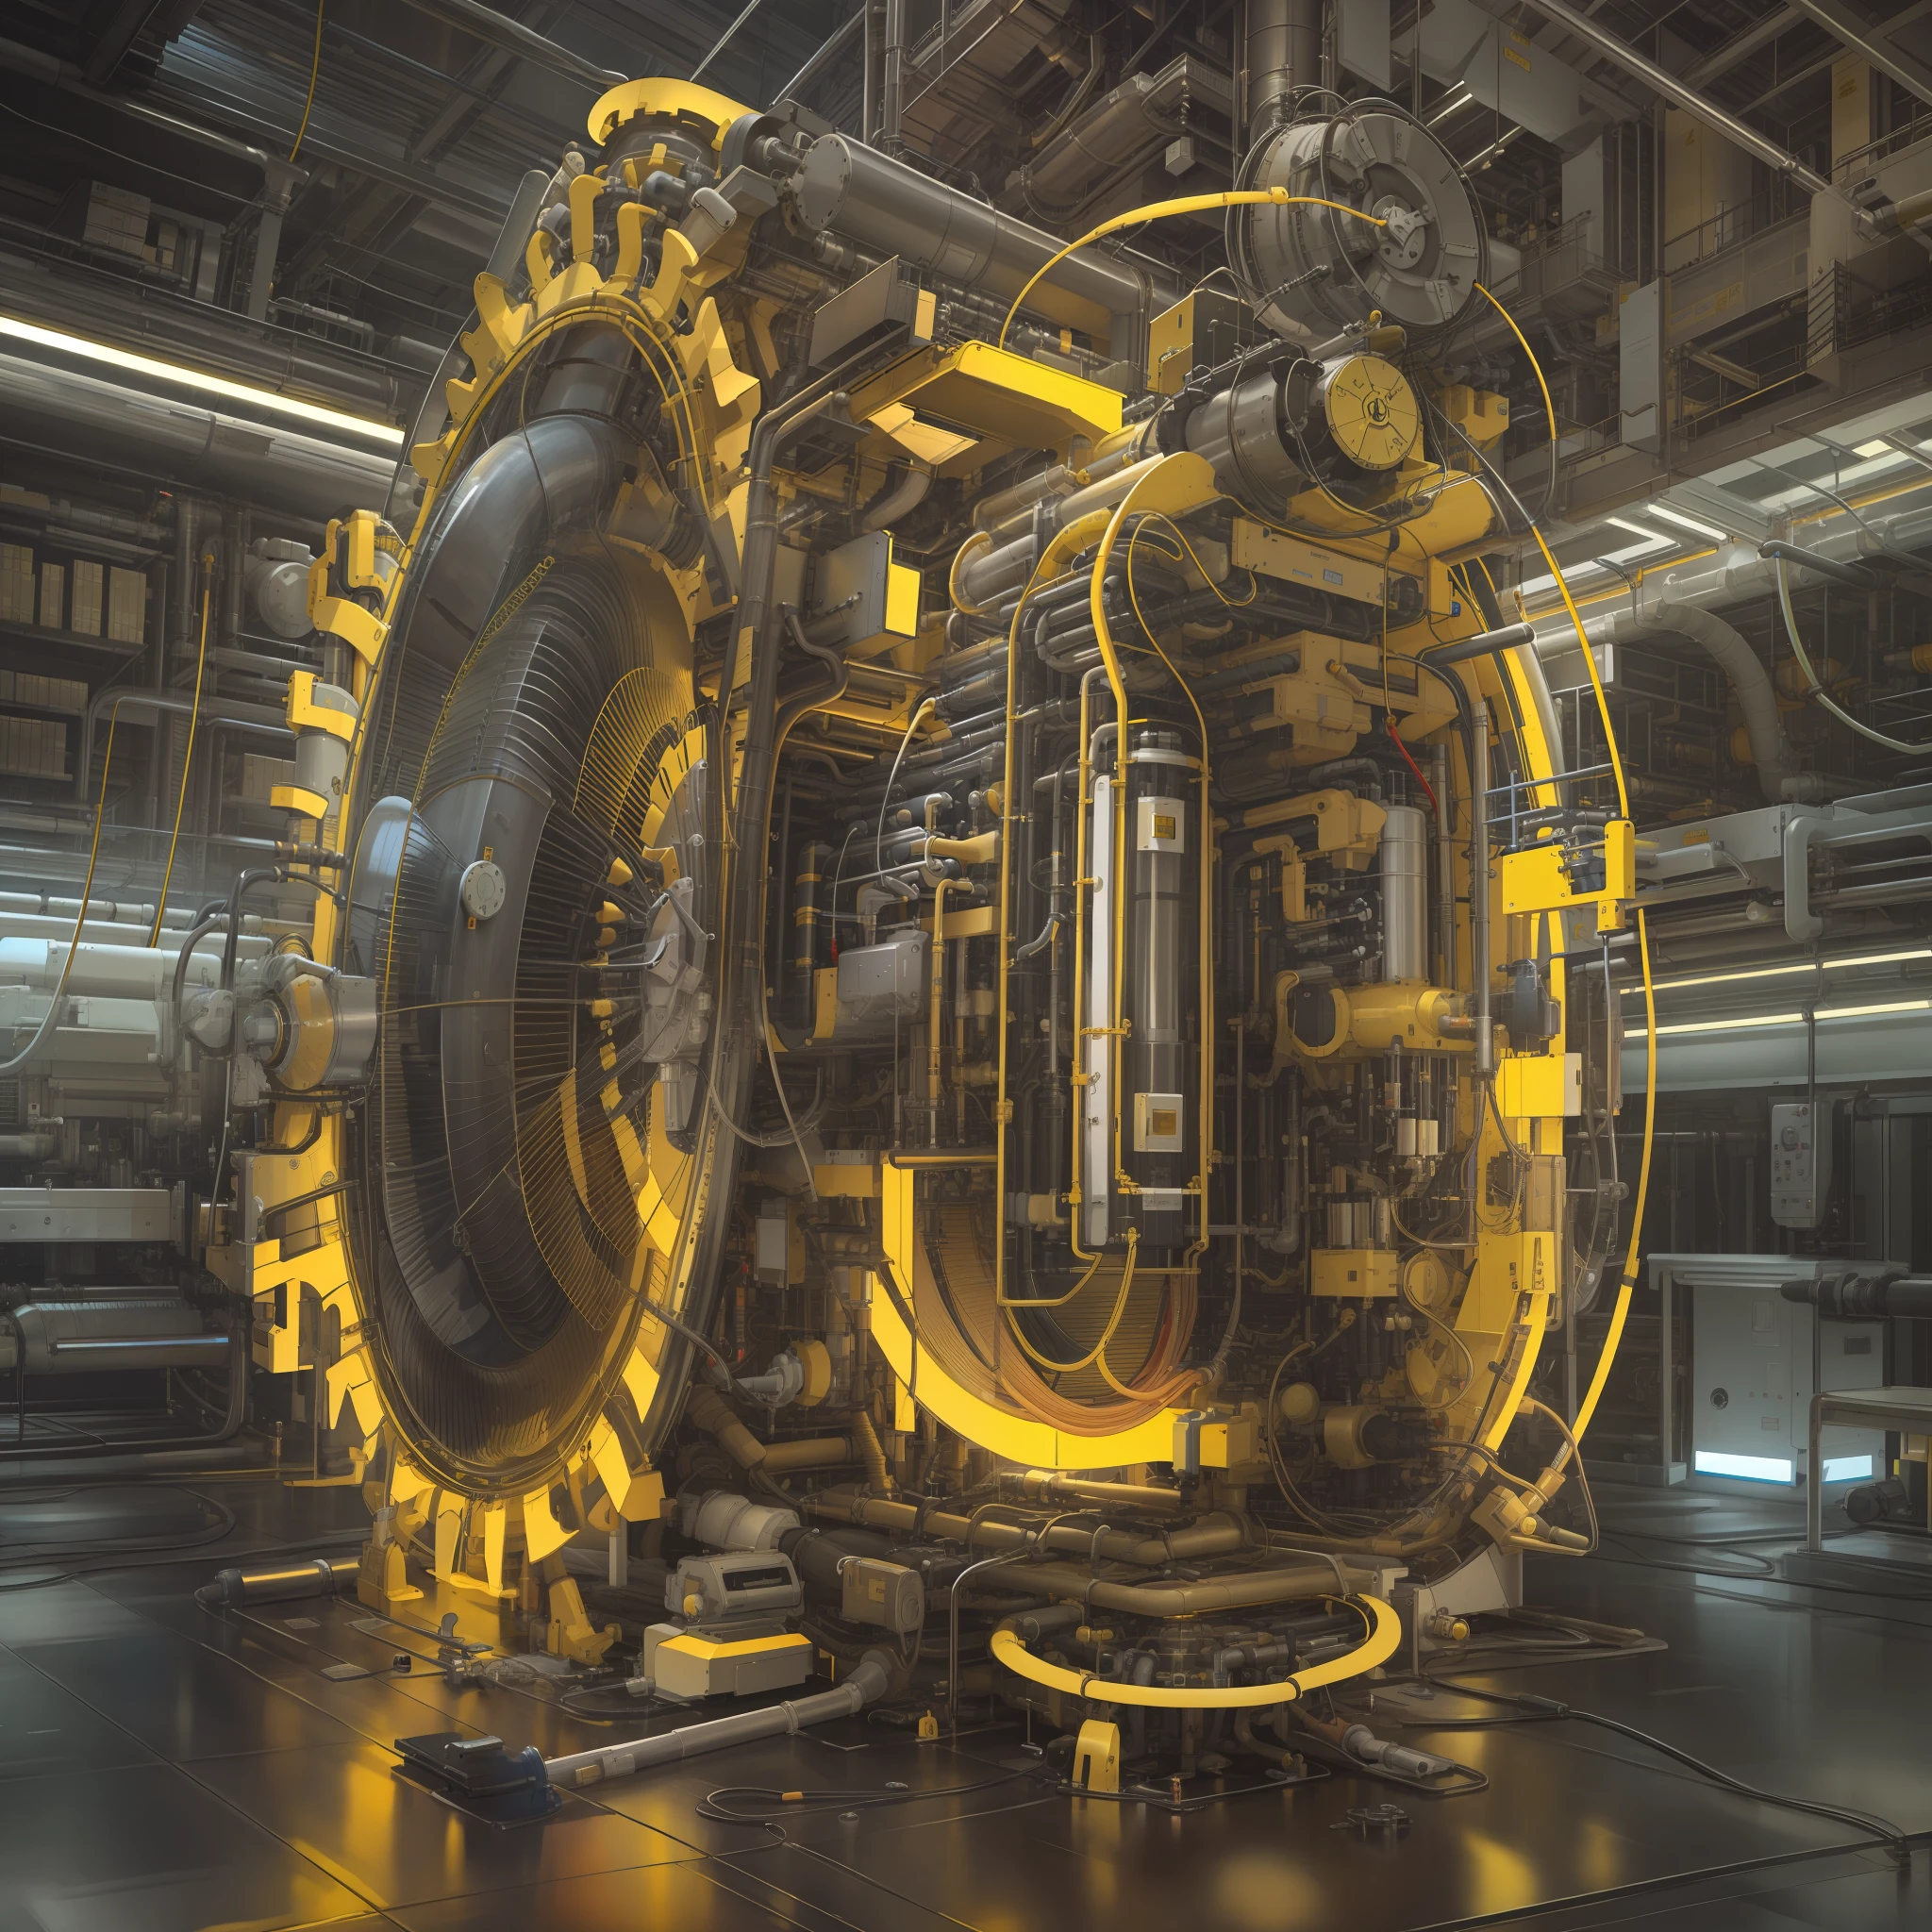 Сделать трубчатый генератор частиц, чрезвычайно подробный, Ультрадетализированный, Современный и технологичный. яркие цвета, Желтые лучи — футуристическая машина времени.